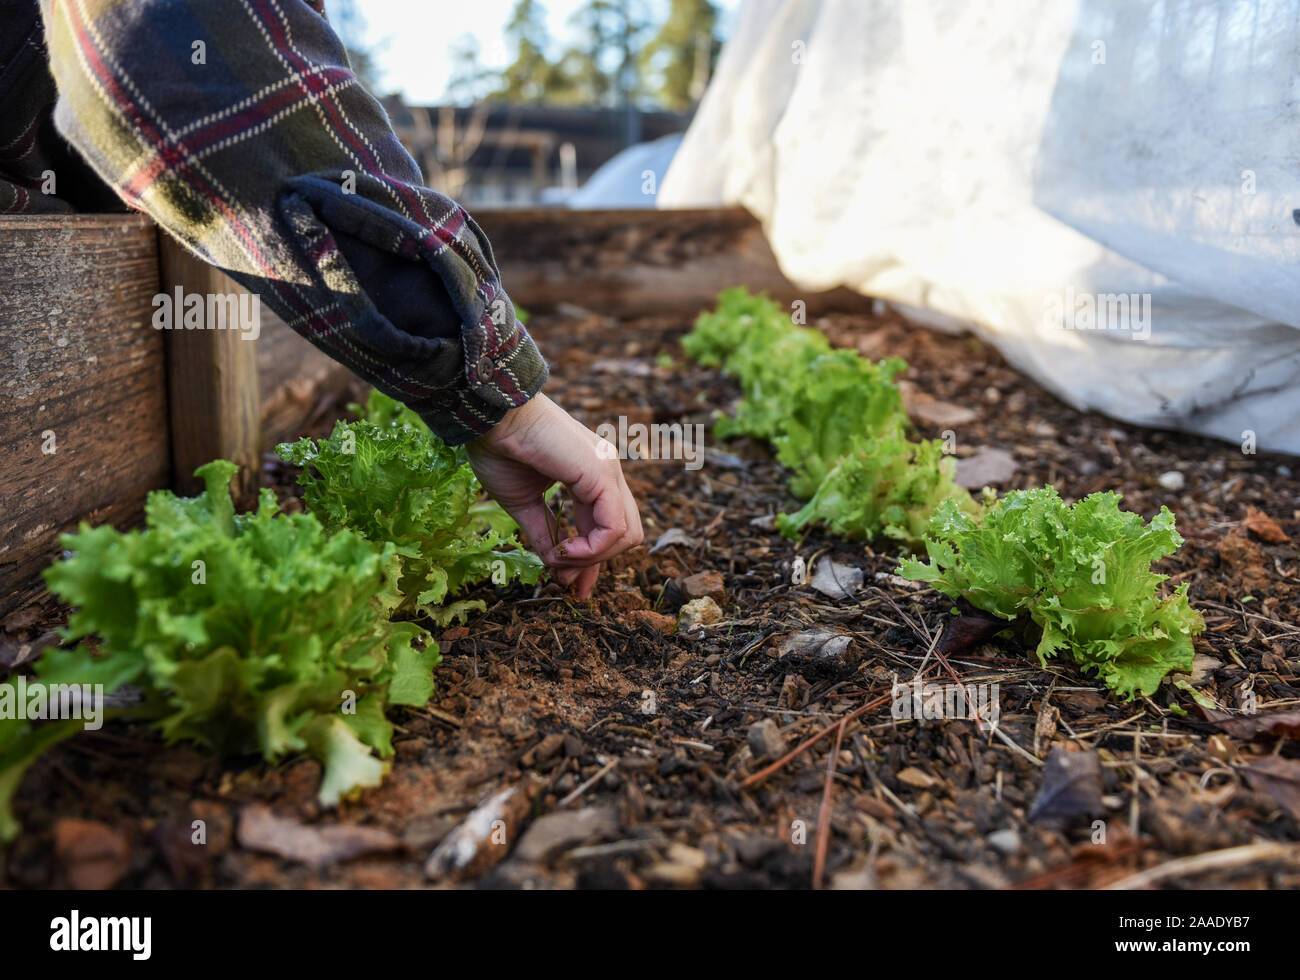 Winterim Fotos in einem lokalen Garten auf Nachhaltigkeit und Ernährungssicherheit in der Gemeinschaft konzentriert. Stockfoto